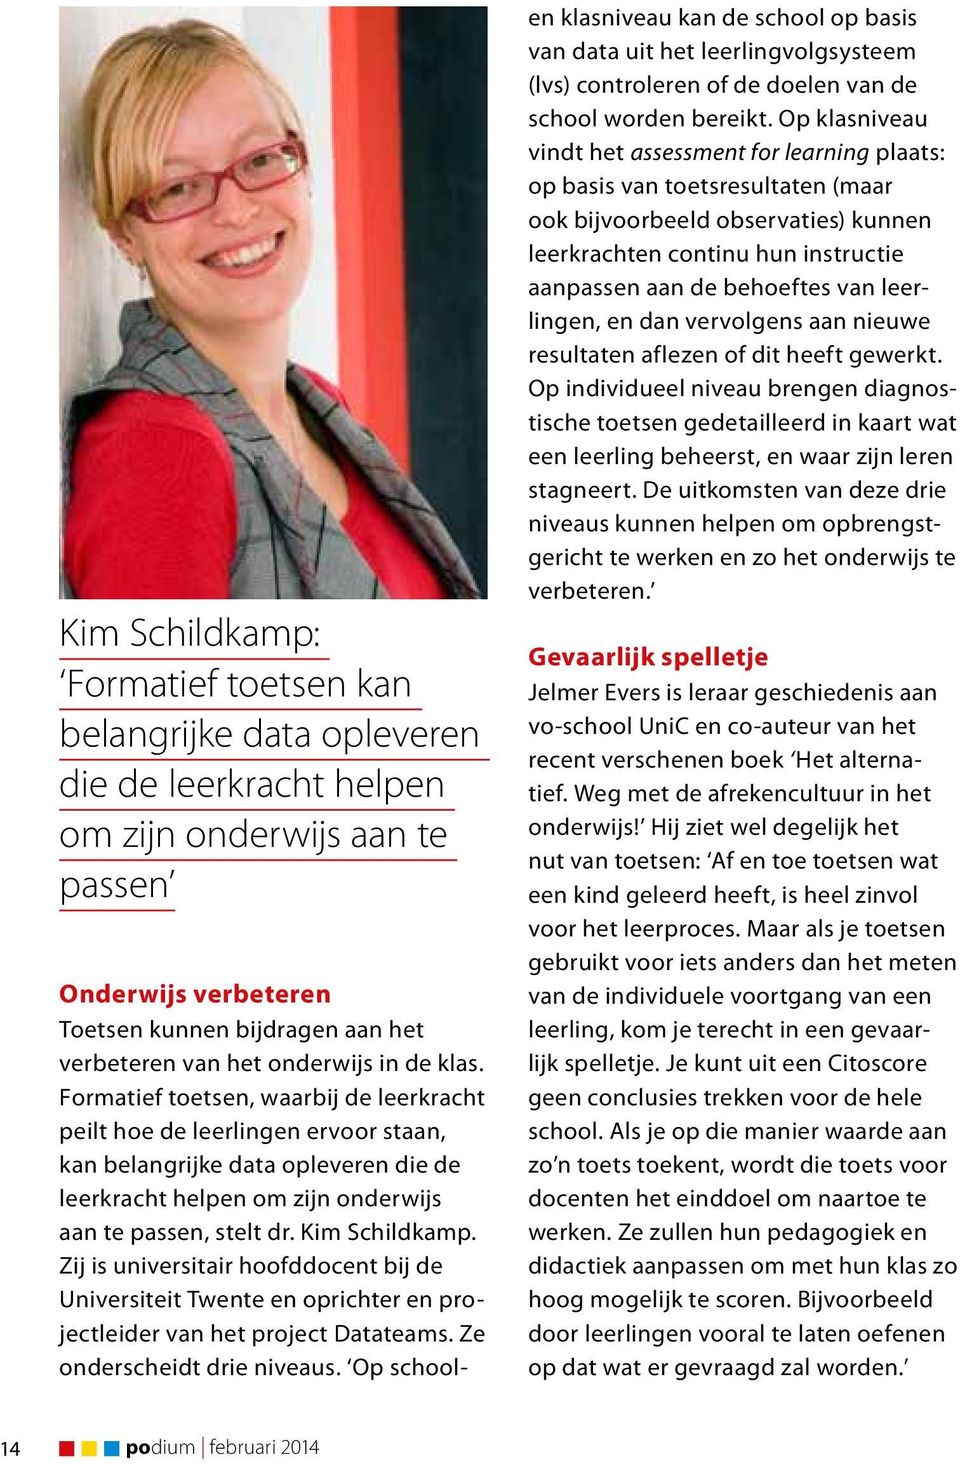 Kim Schildkamp. Zij is universitair hoofddocent bij de Universiteit Twente en oprichter en projectleider van het project Datateams. Ze onderscheidt drie niveaus.